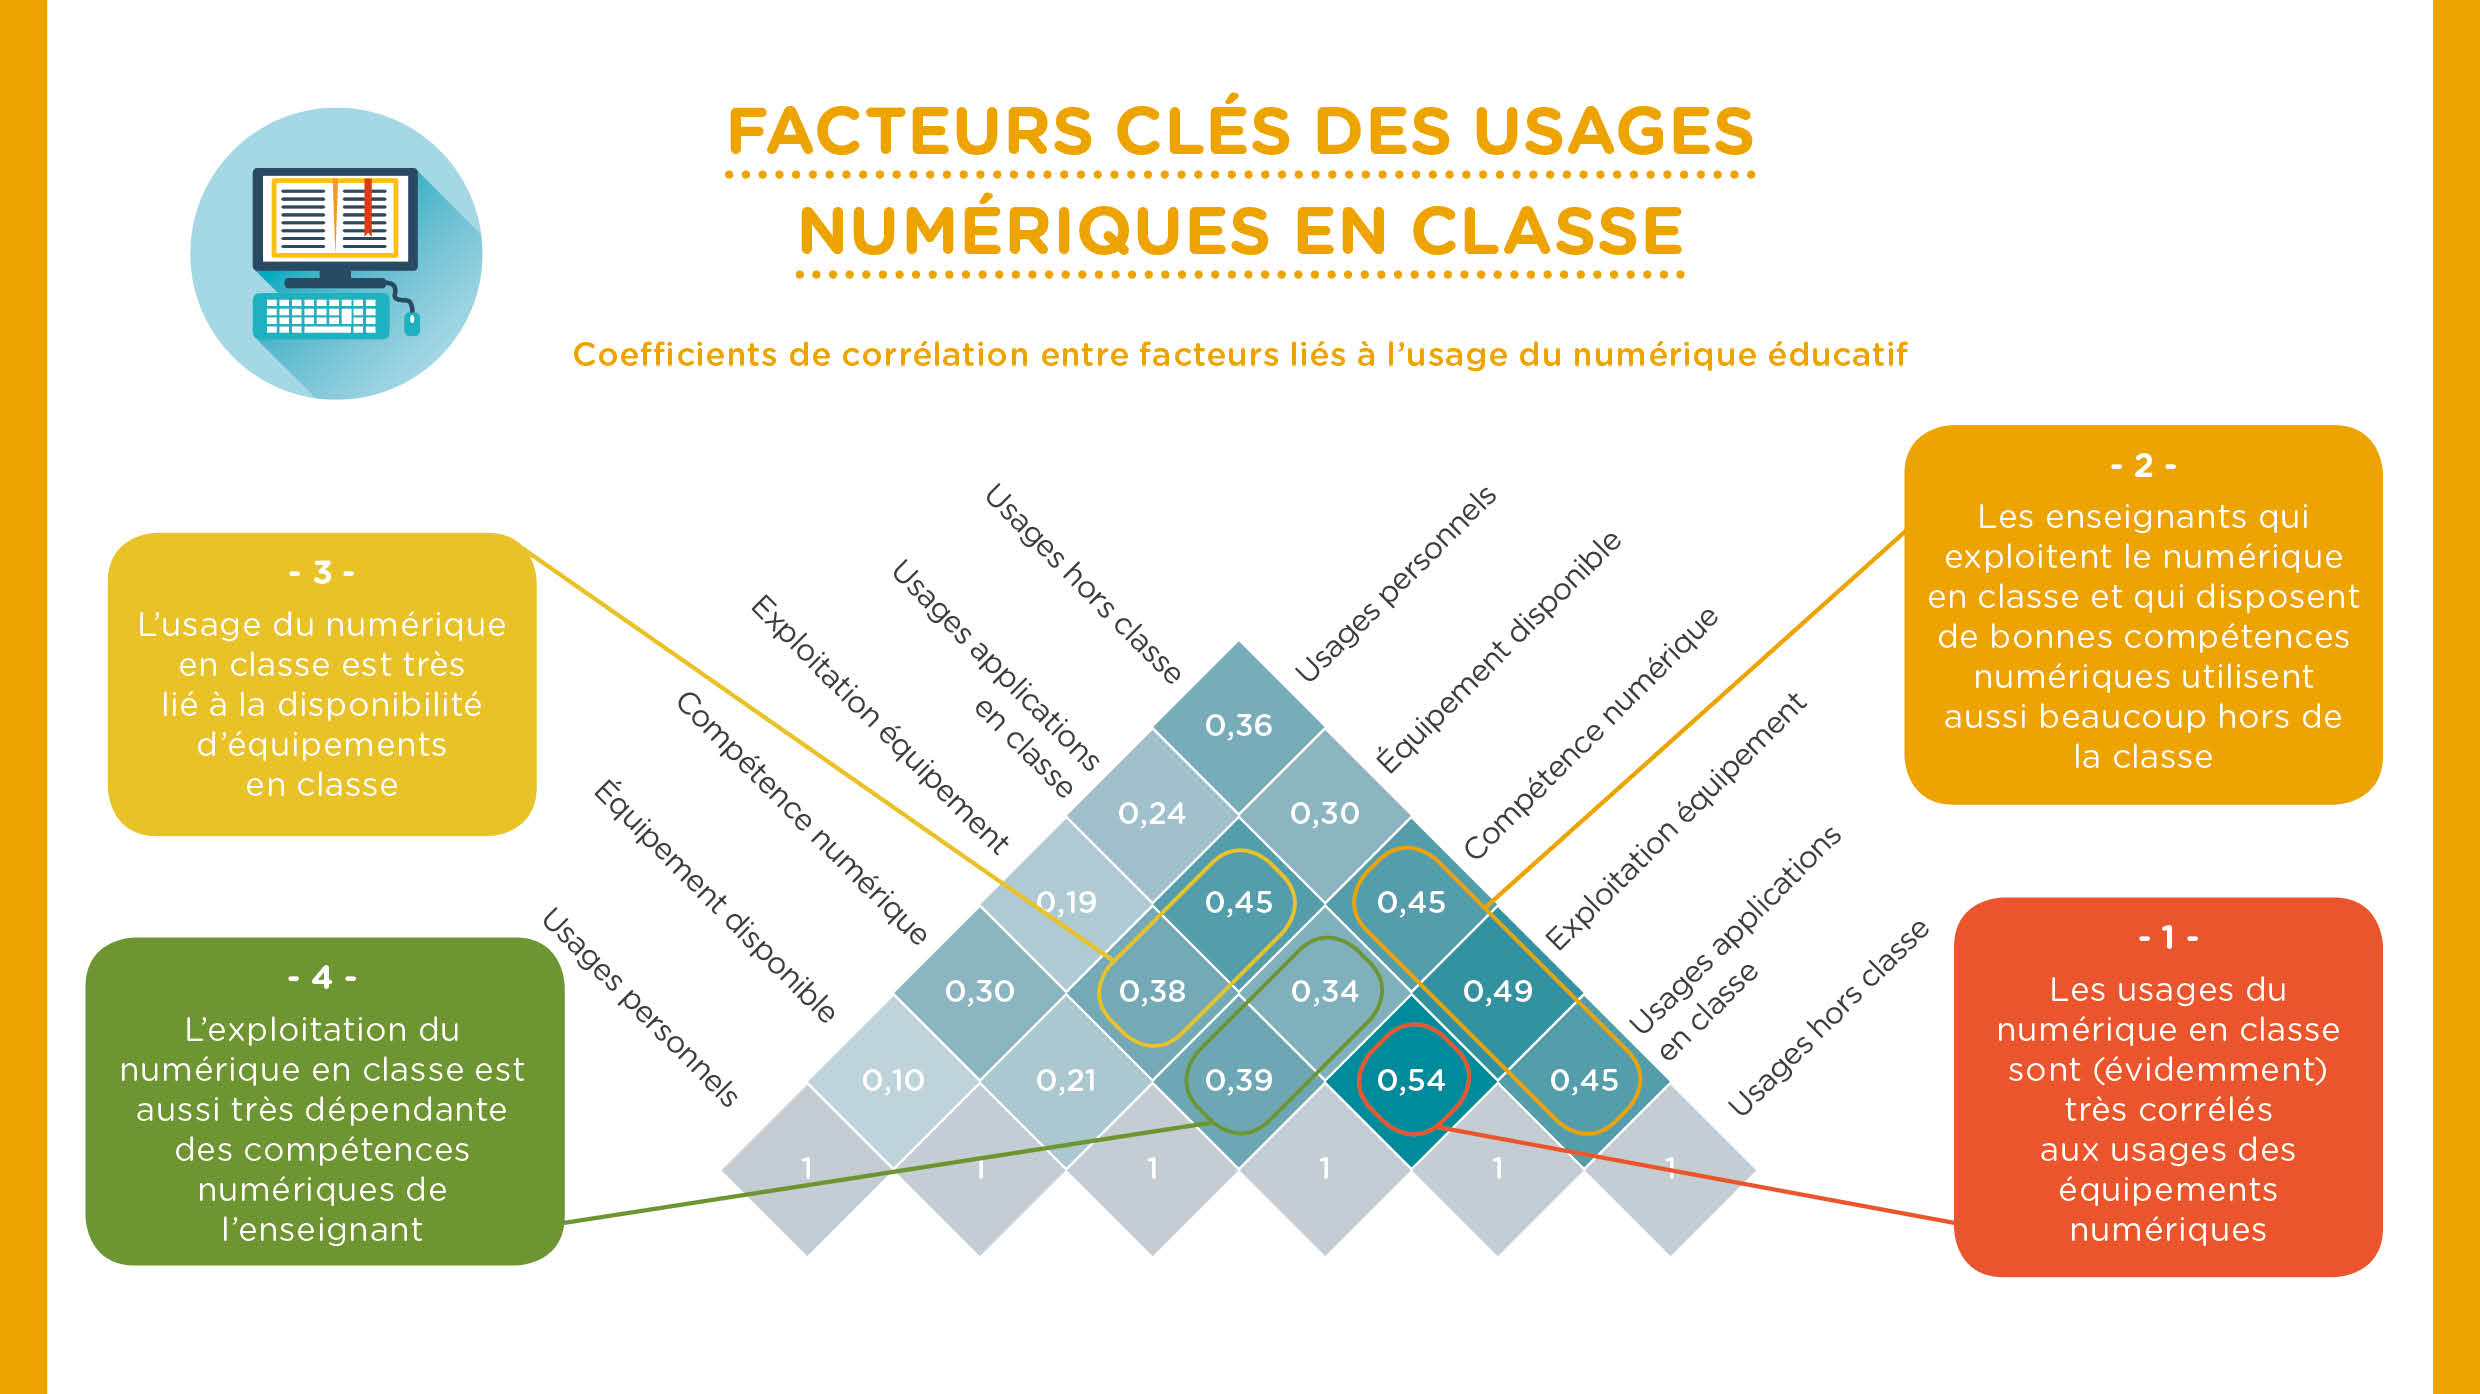 Barom%C3%A8tre-Digital-Wallonia-2018-Education-Num%C3%A9rique-Facteurs-Cl%C3%A9s-Usages-Num%C3%A9riques-Classes.jpg